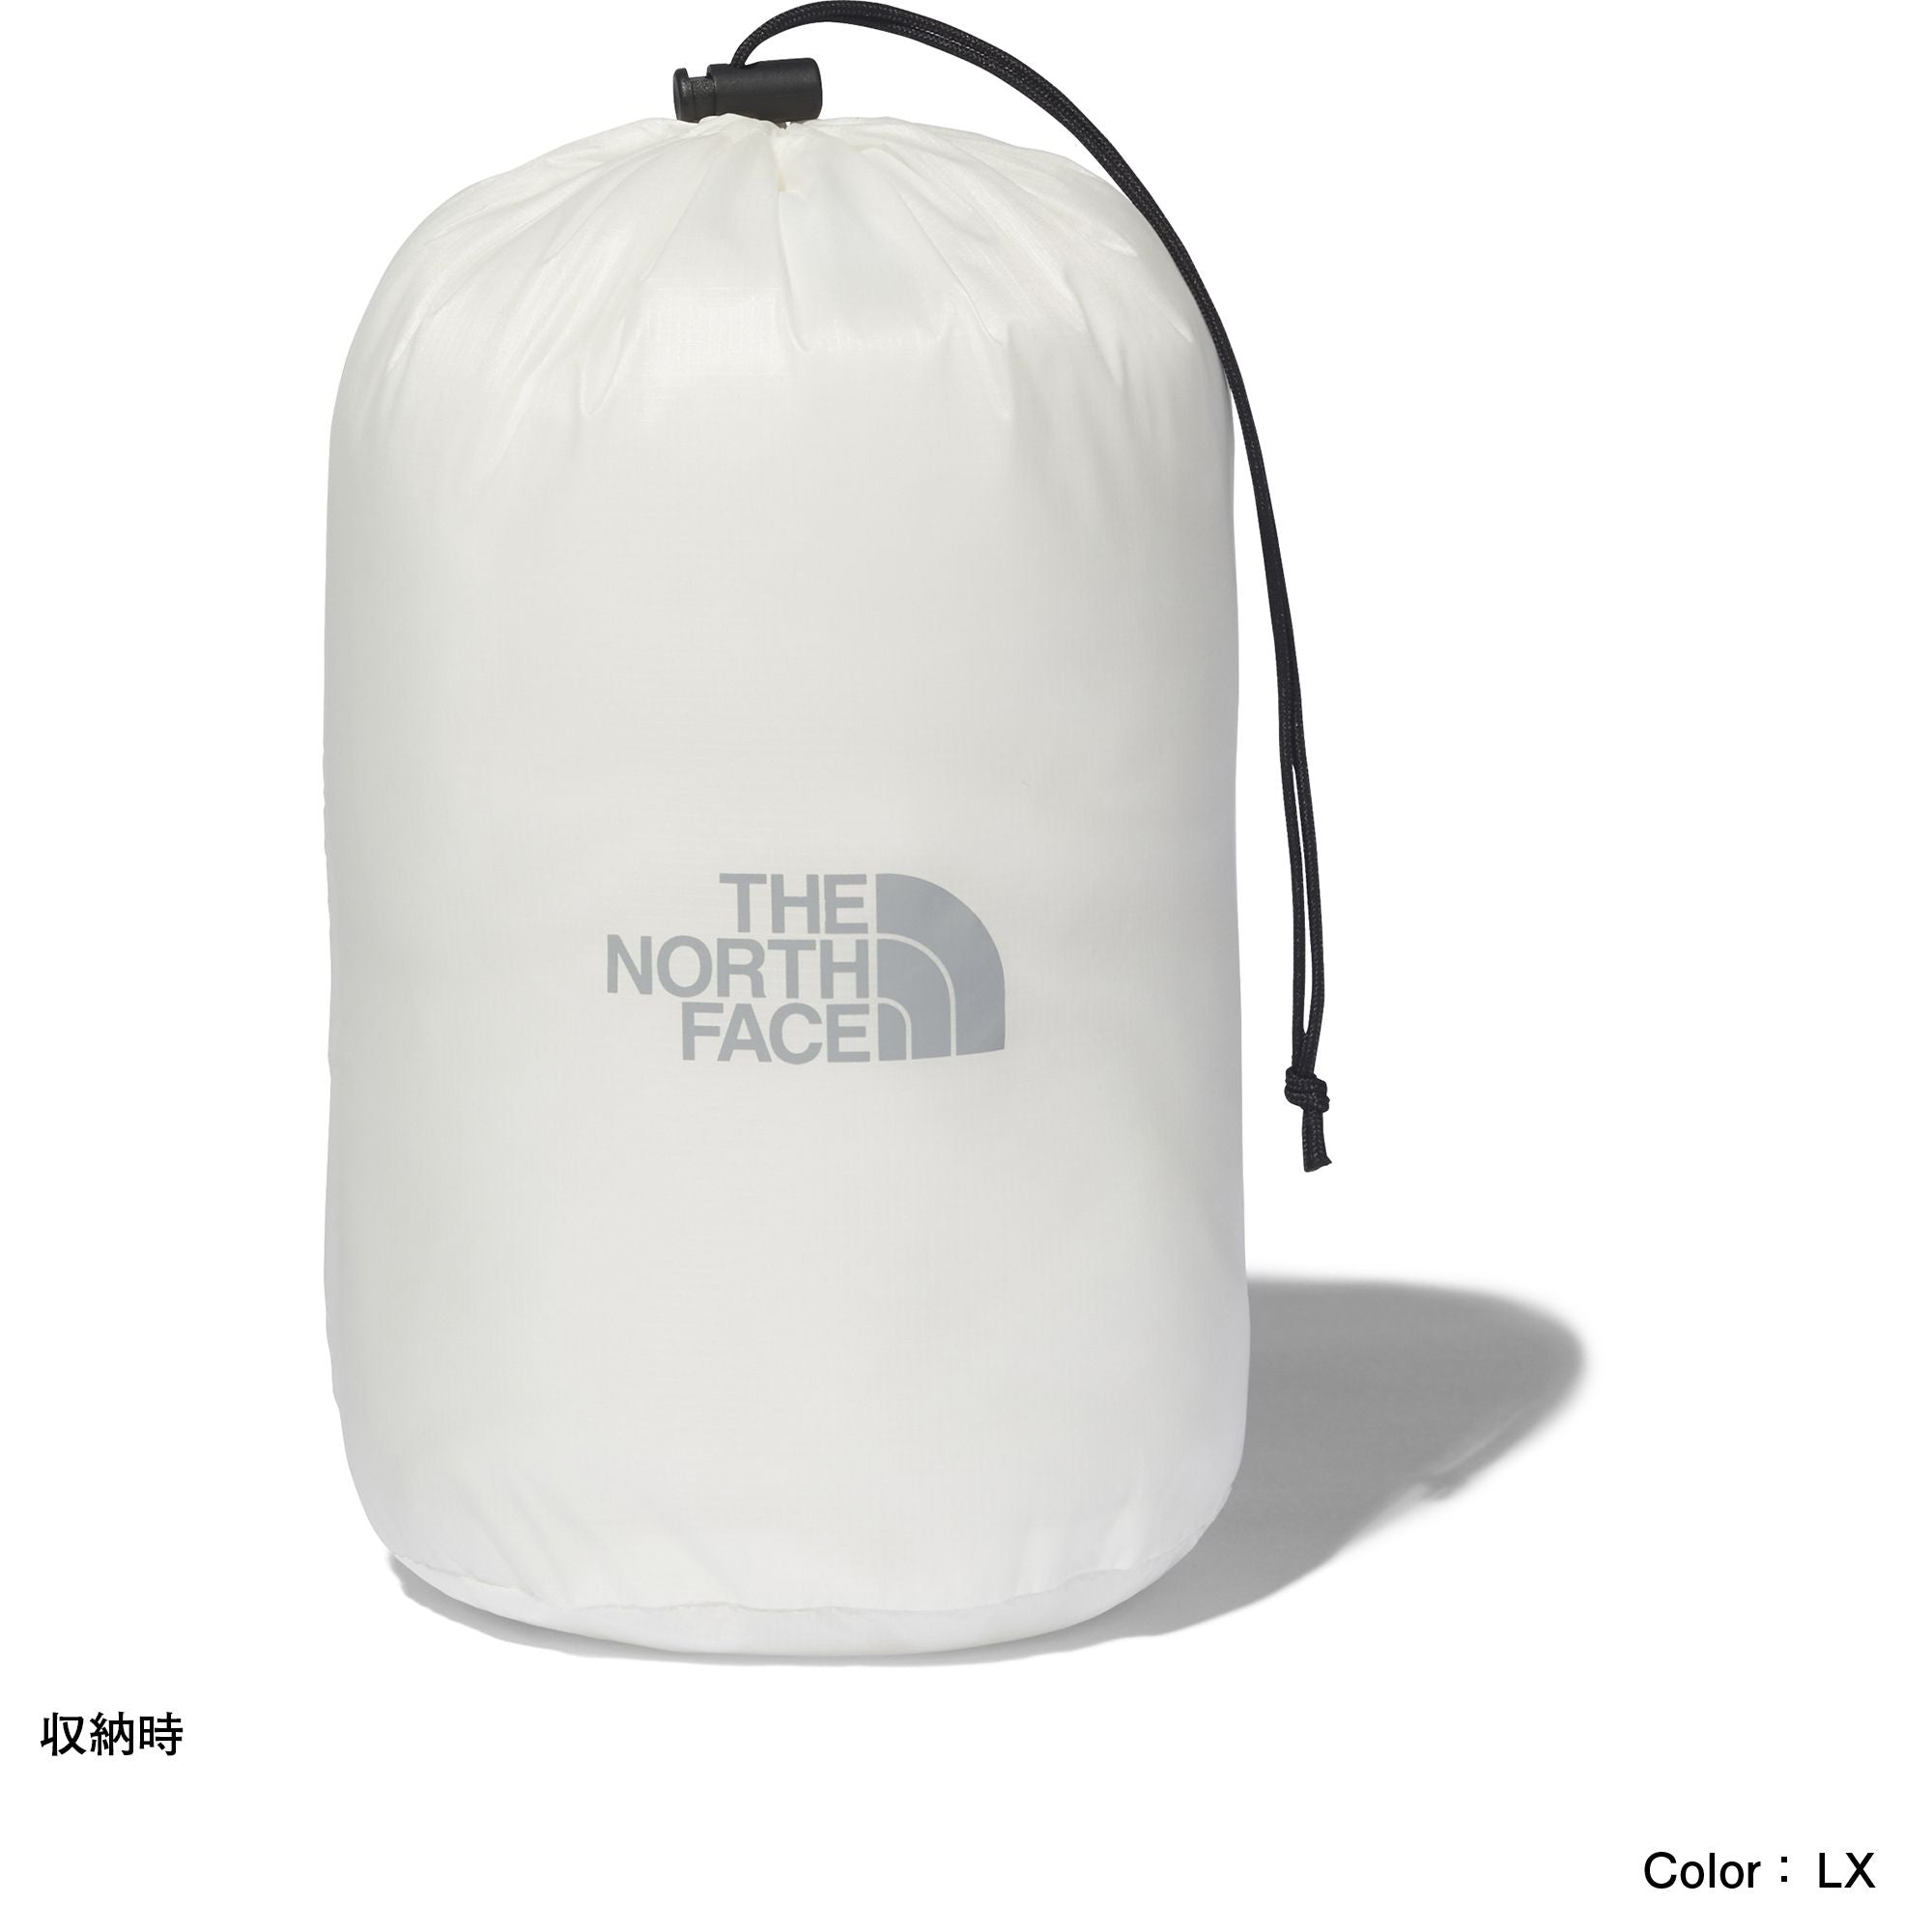 THE NORTH FACE ザ・ノースフェイス　マウンテンレインテックスジャケット（メンズ） Mountain Raintex Jacket  NP12135